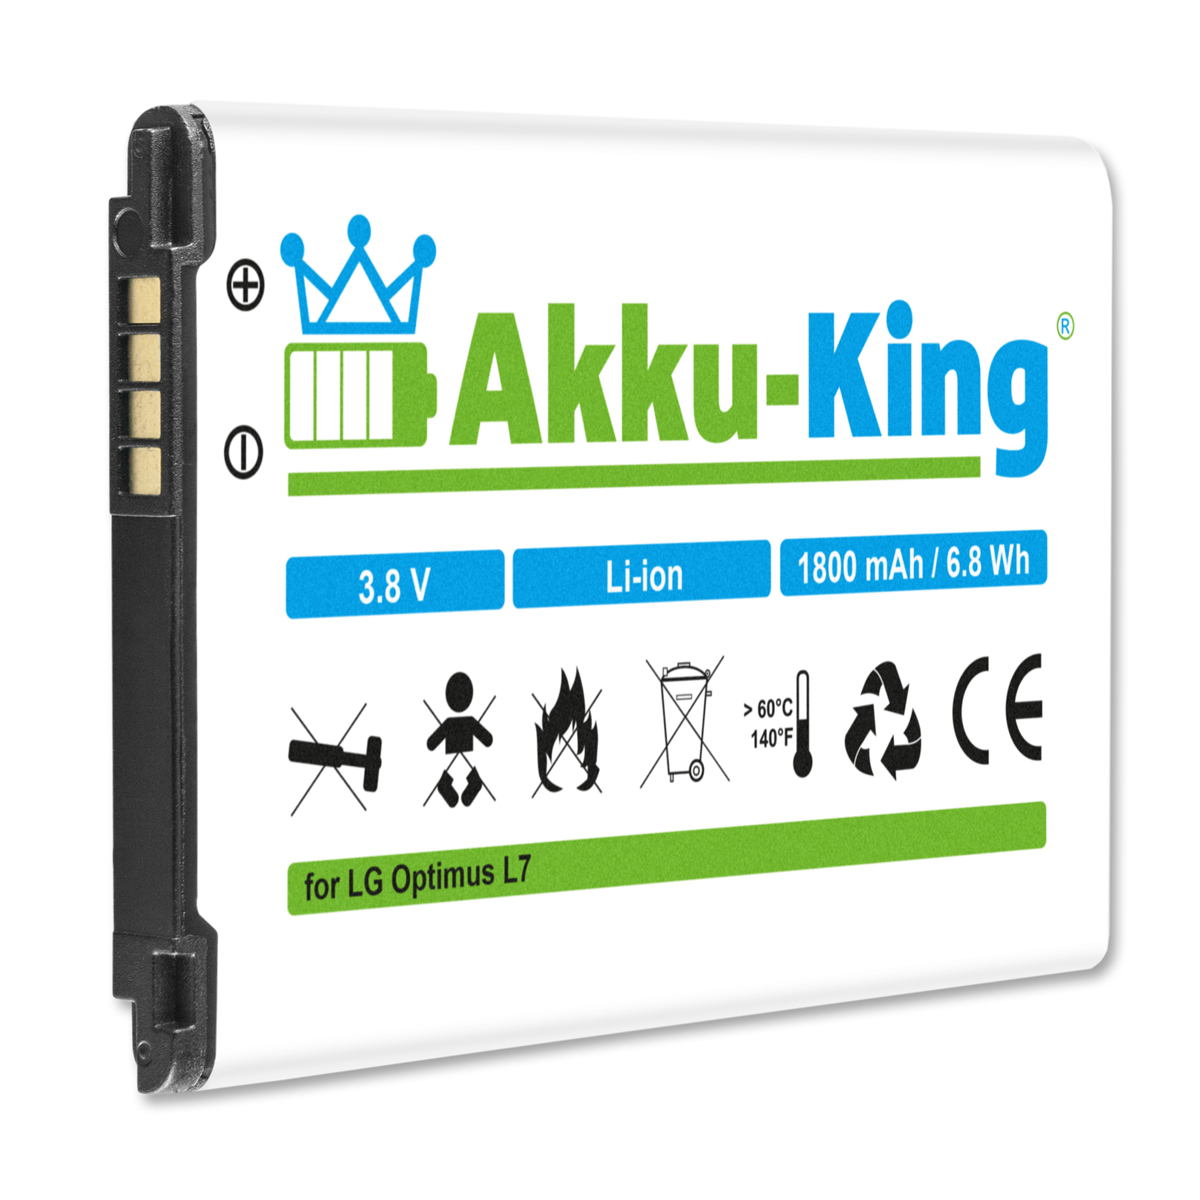 AKKU-KING Akku Volt, mit 3.8 Li-Ion BL-44JH Handy-Akku, 1800mAh LG kompatibel